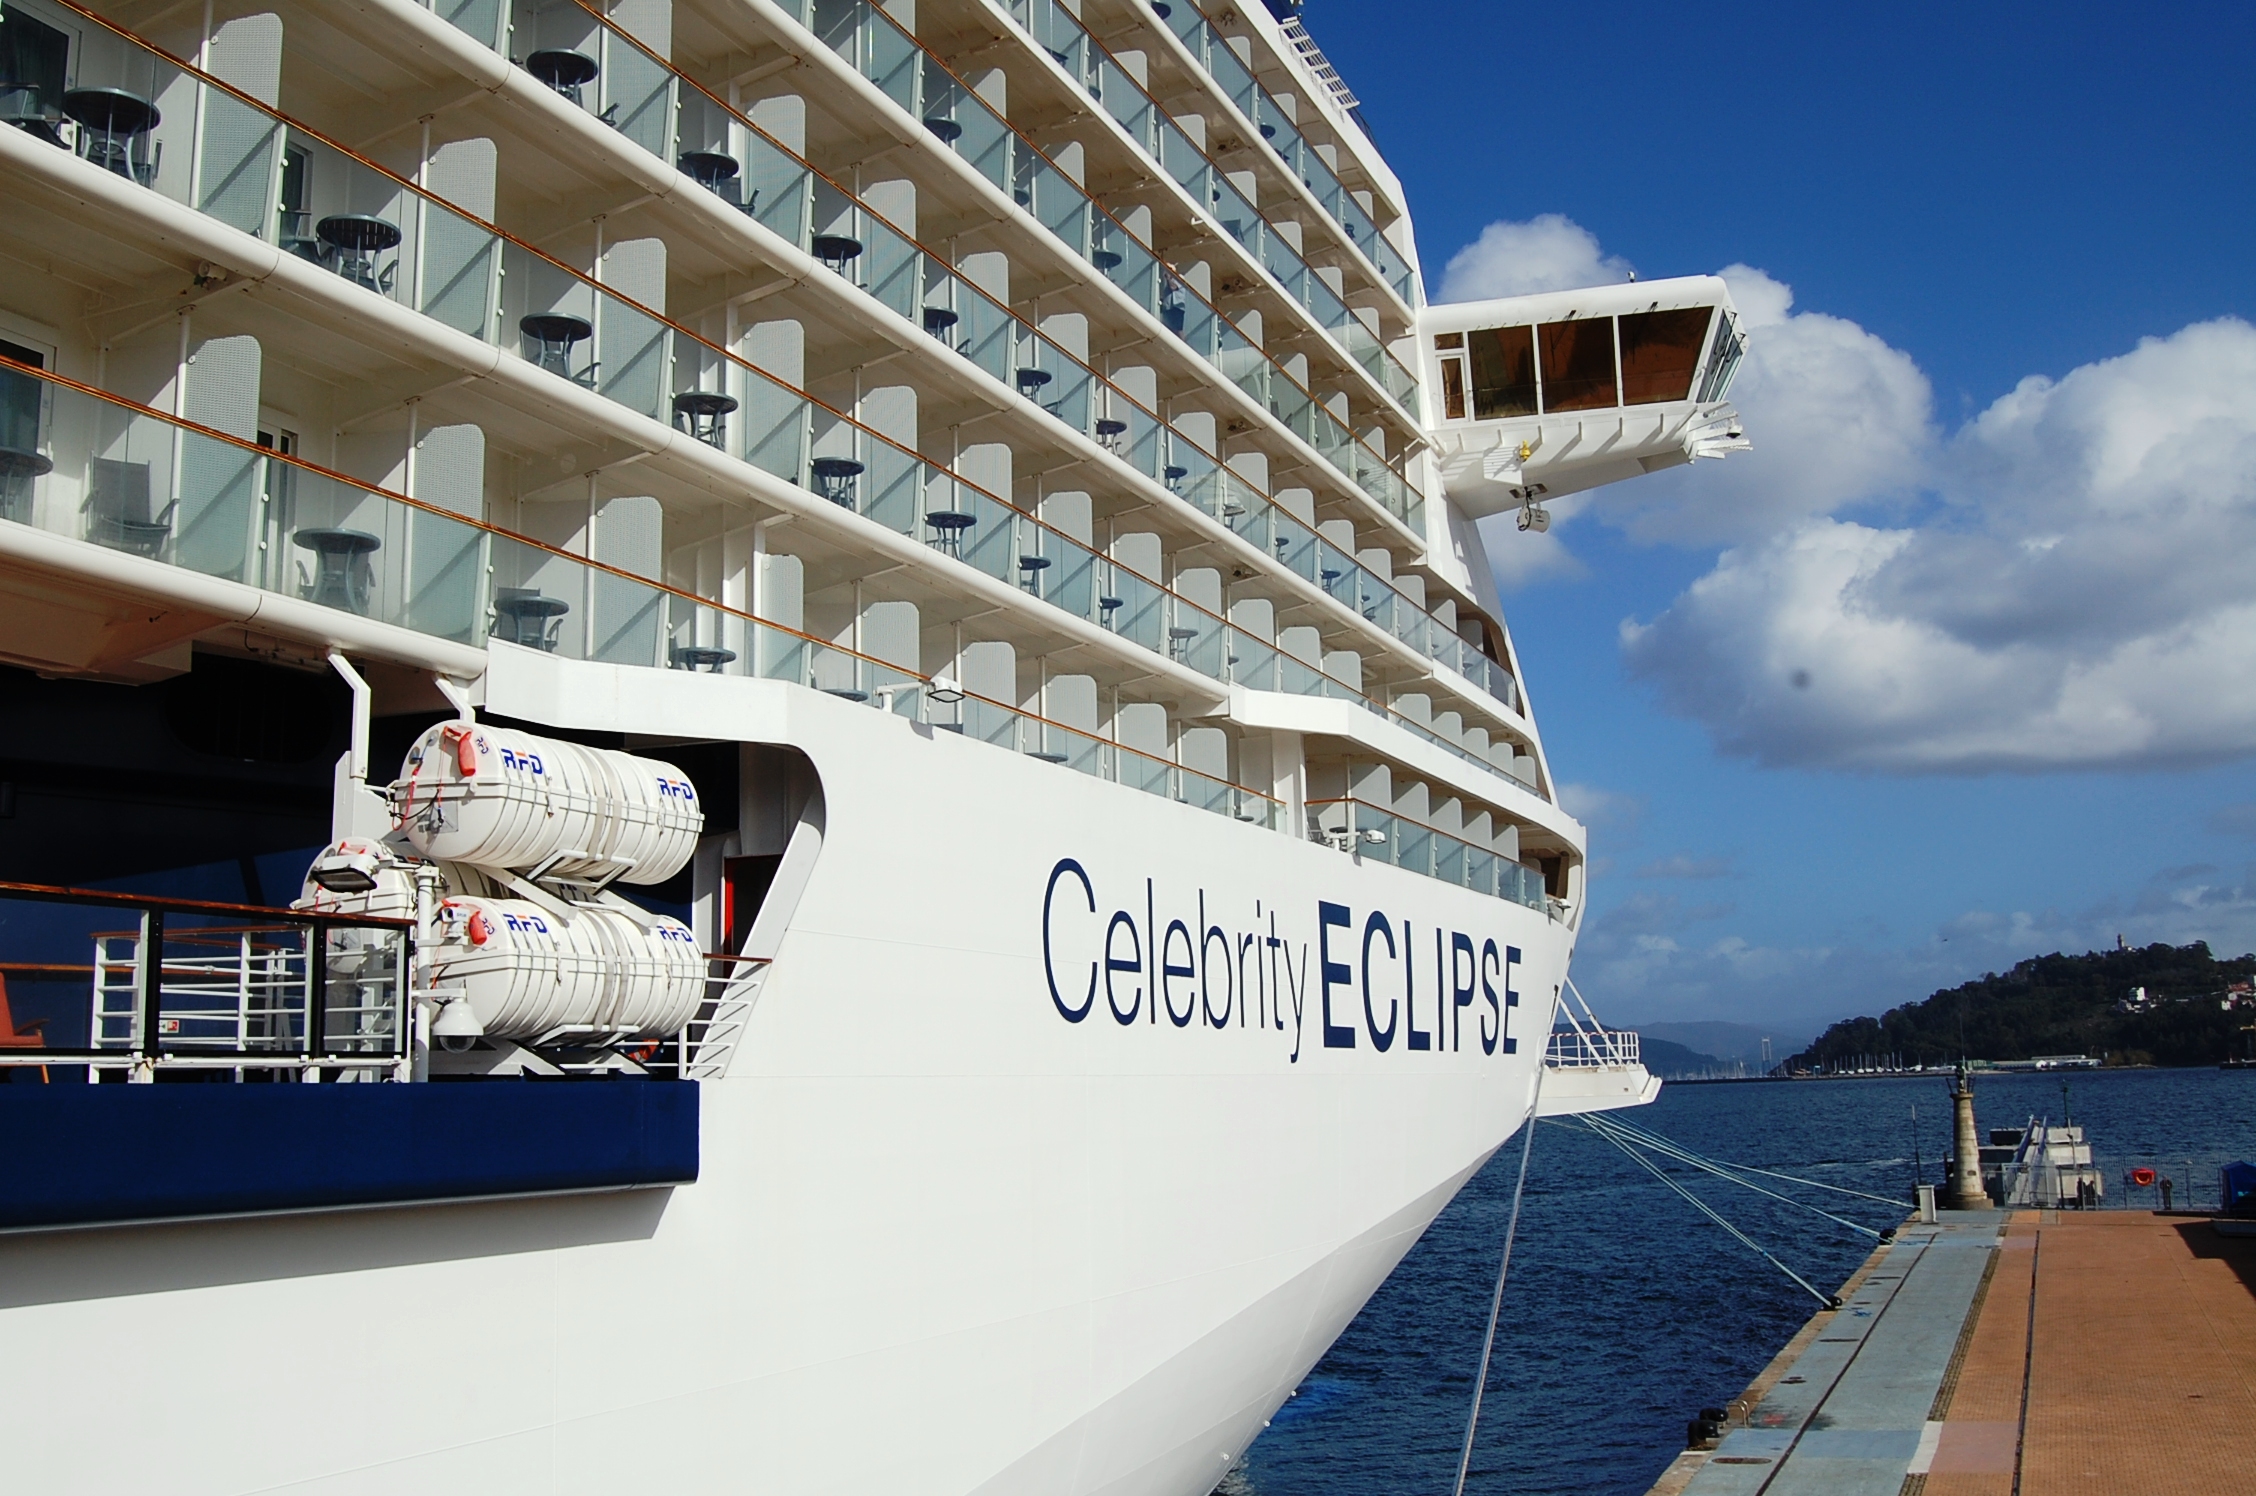 Vista del exterior del barco Eclipse de Celebrity Cruises atracado en el Puerto de Vigo